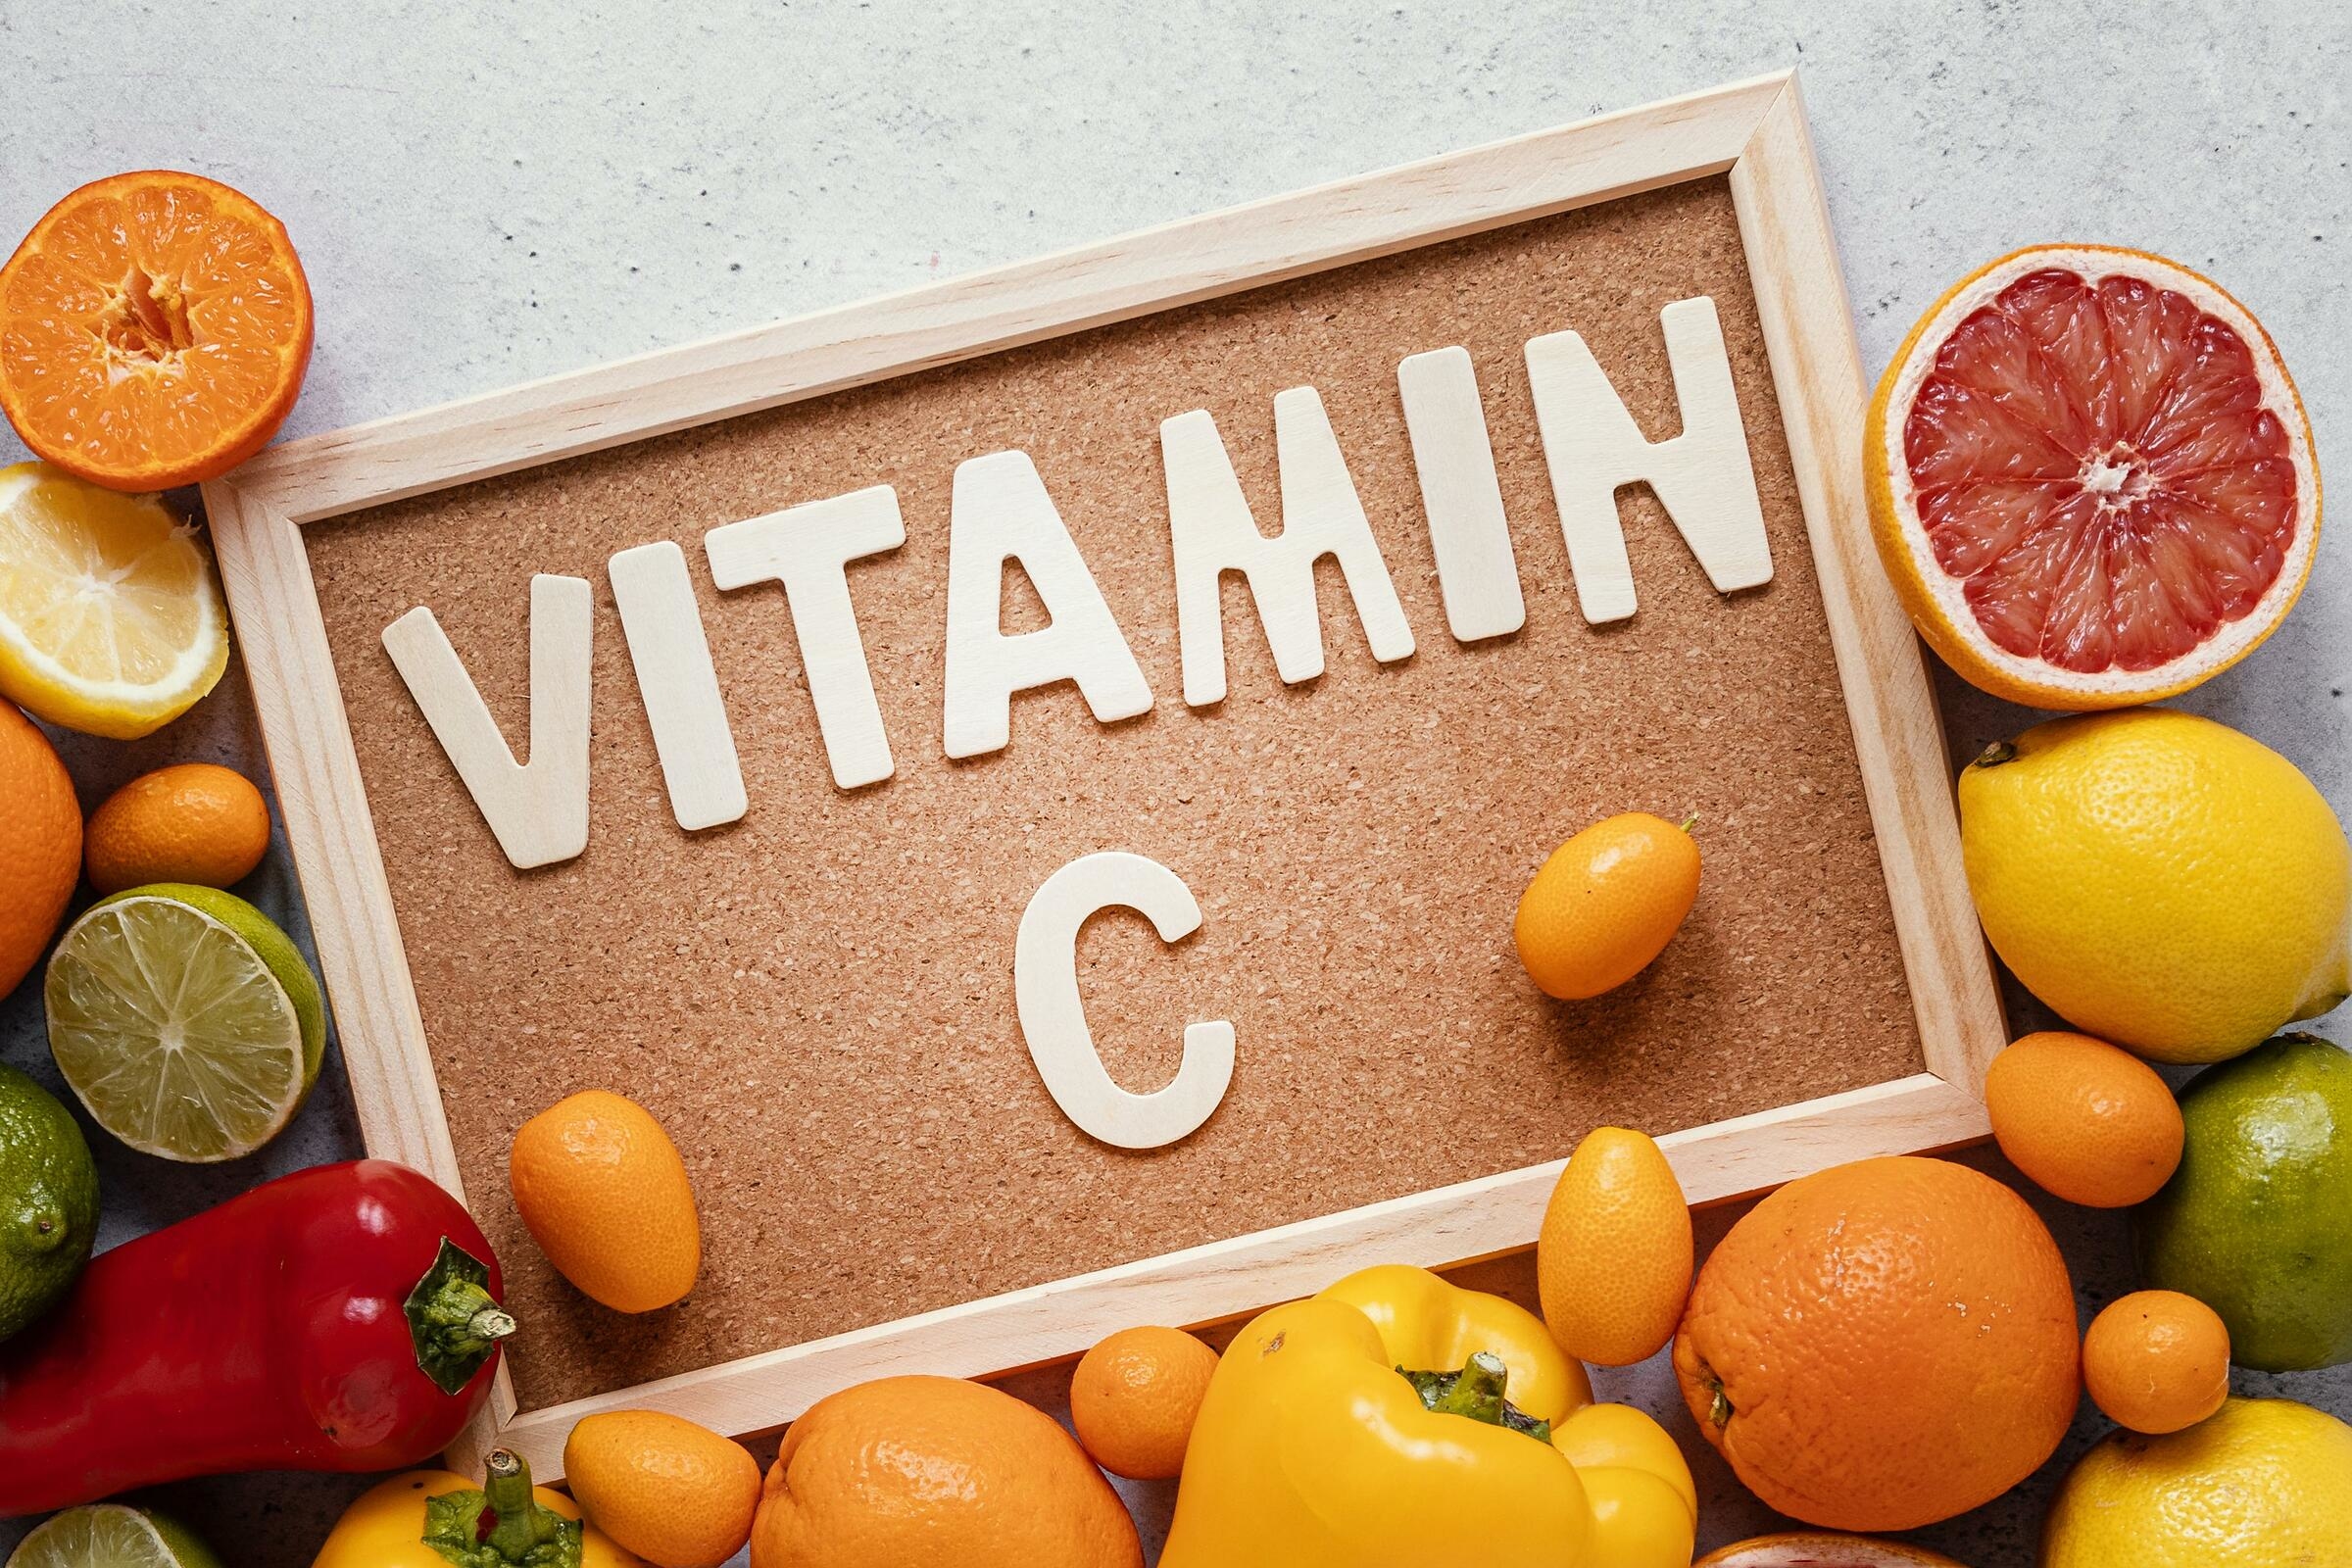 Art vitamins. Витамины картинки. Что такое витамины. Витамины в продуктах картинки для детей. Витамины и минералы картинки.